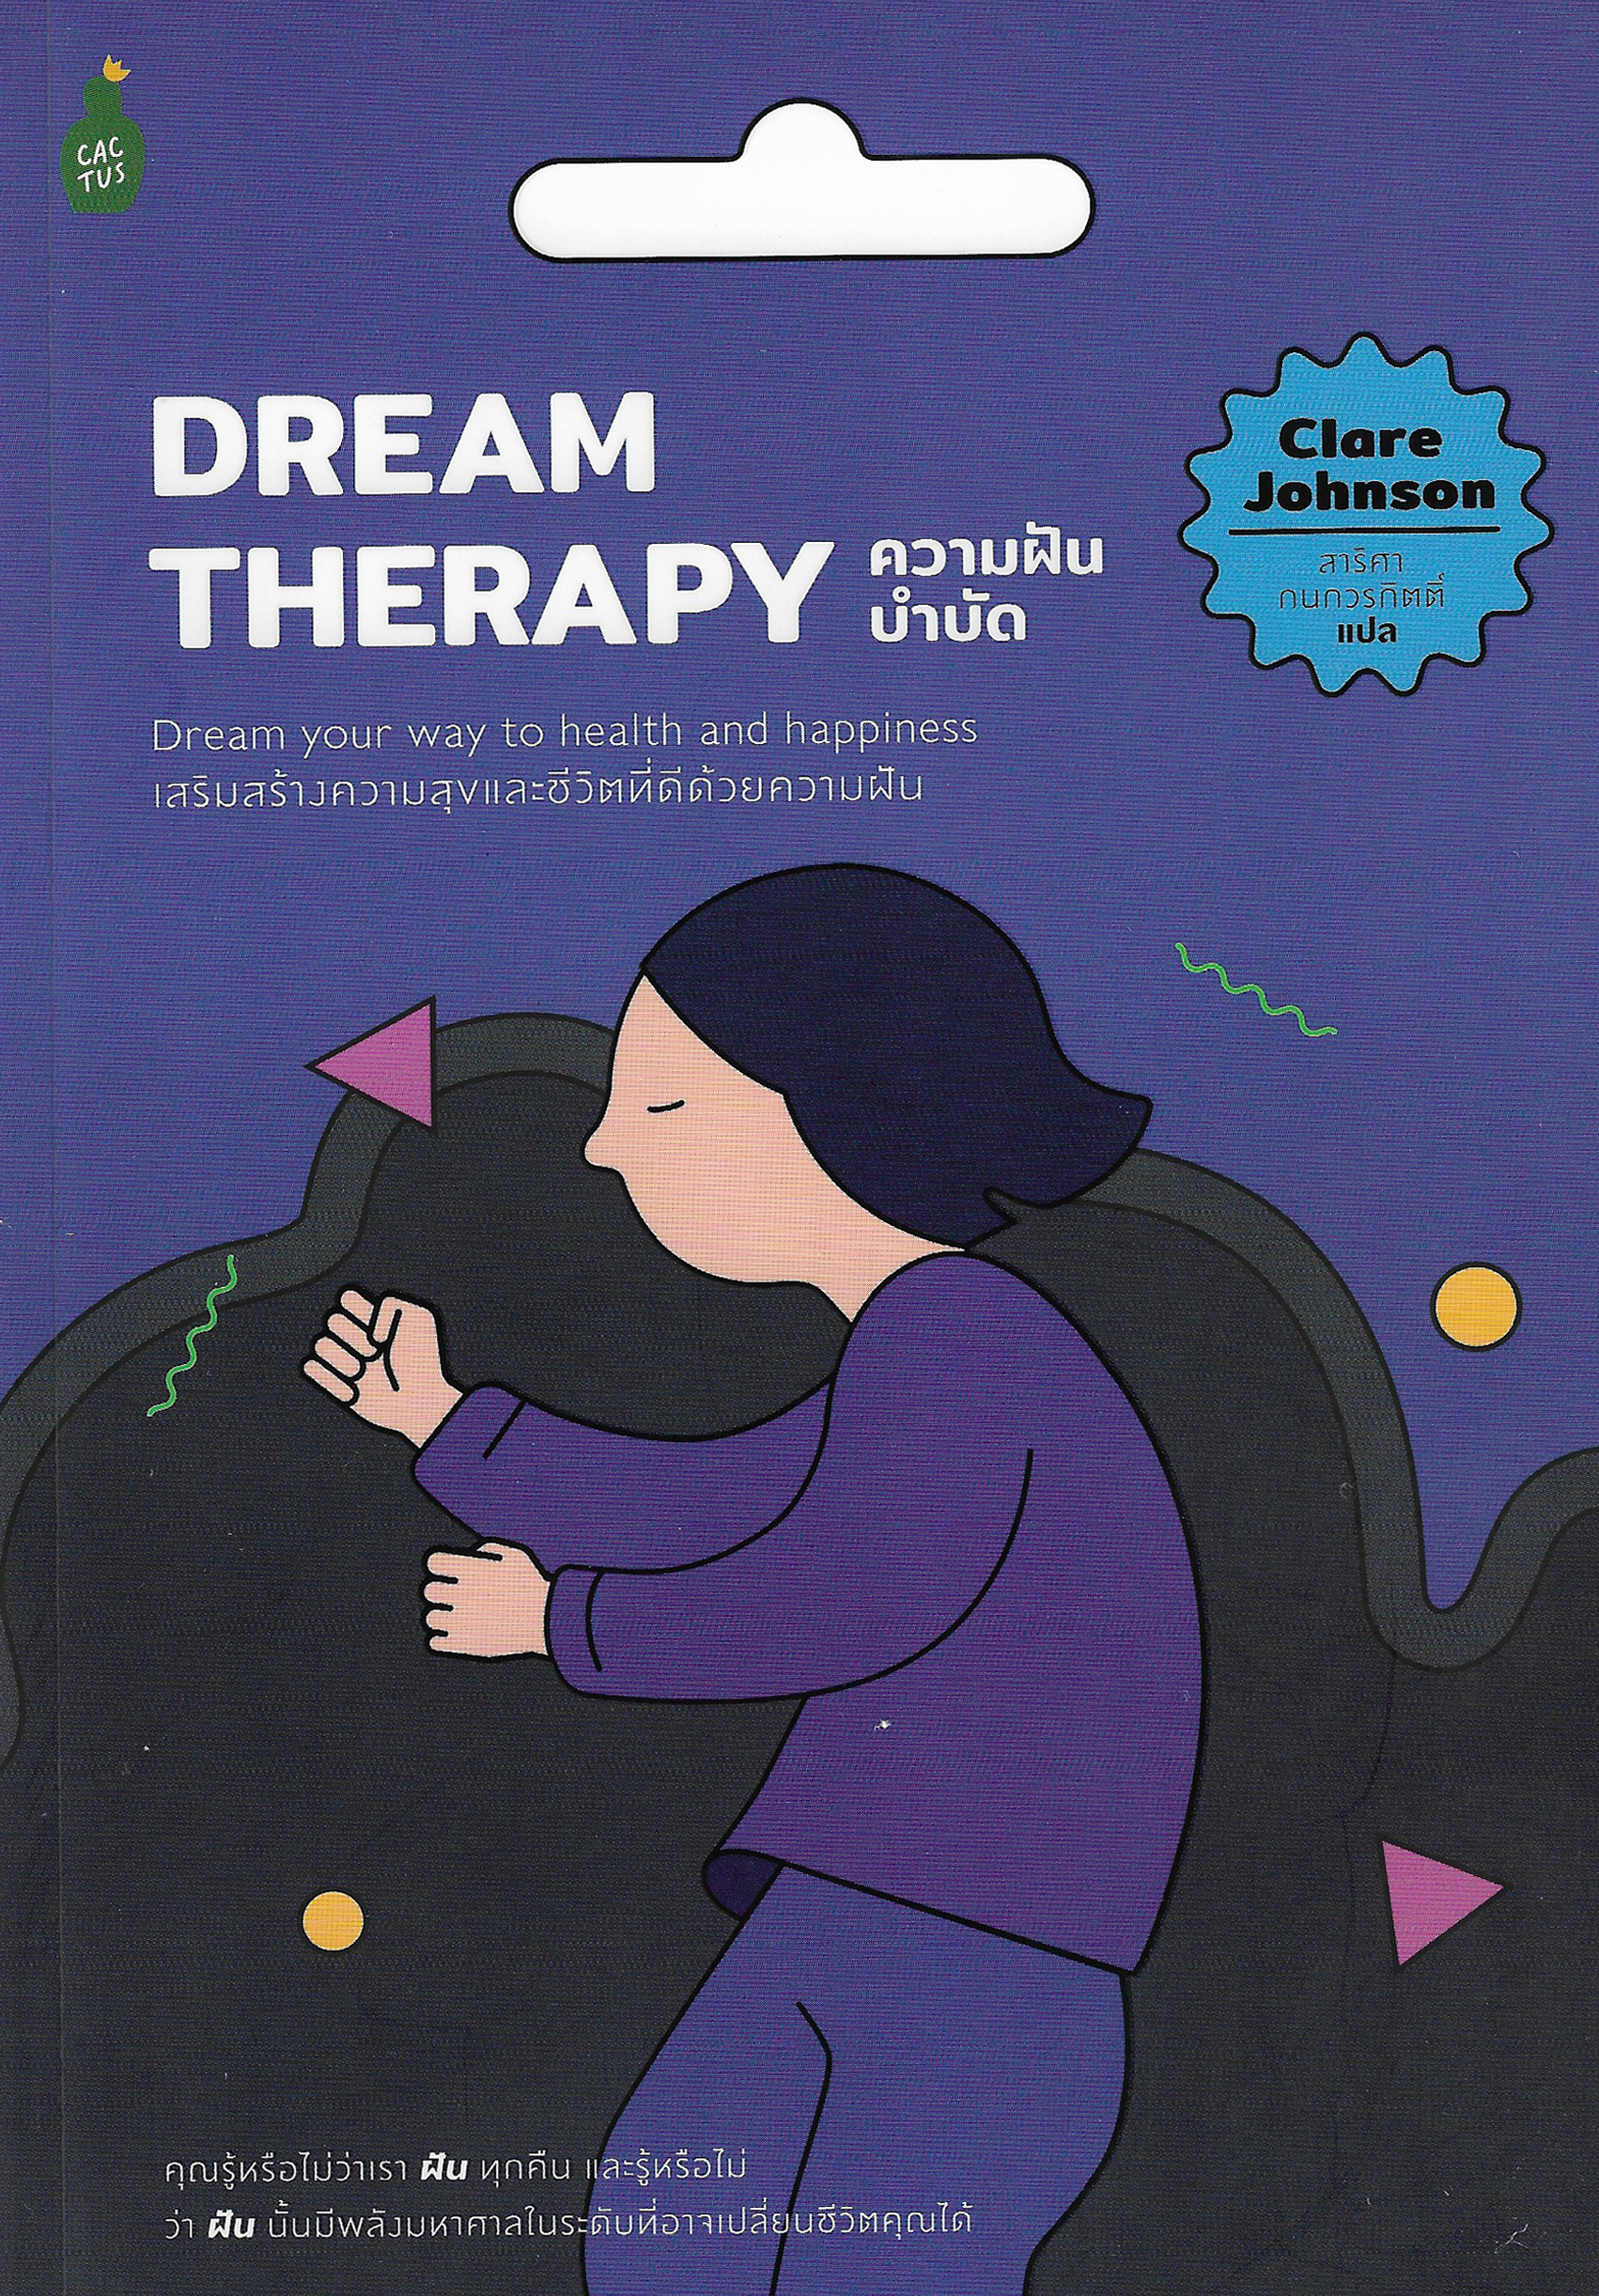 Dream Therapy ความฝันบำบัด / Clare Johnson เขียน สาริศา กนกวรกิตติ์ แปล / Cactus